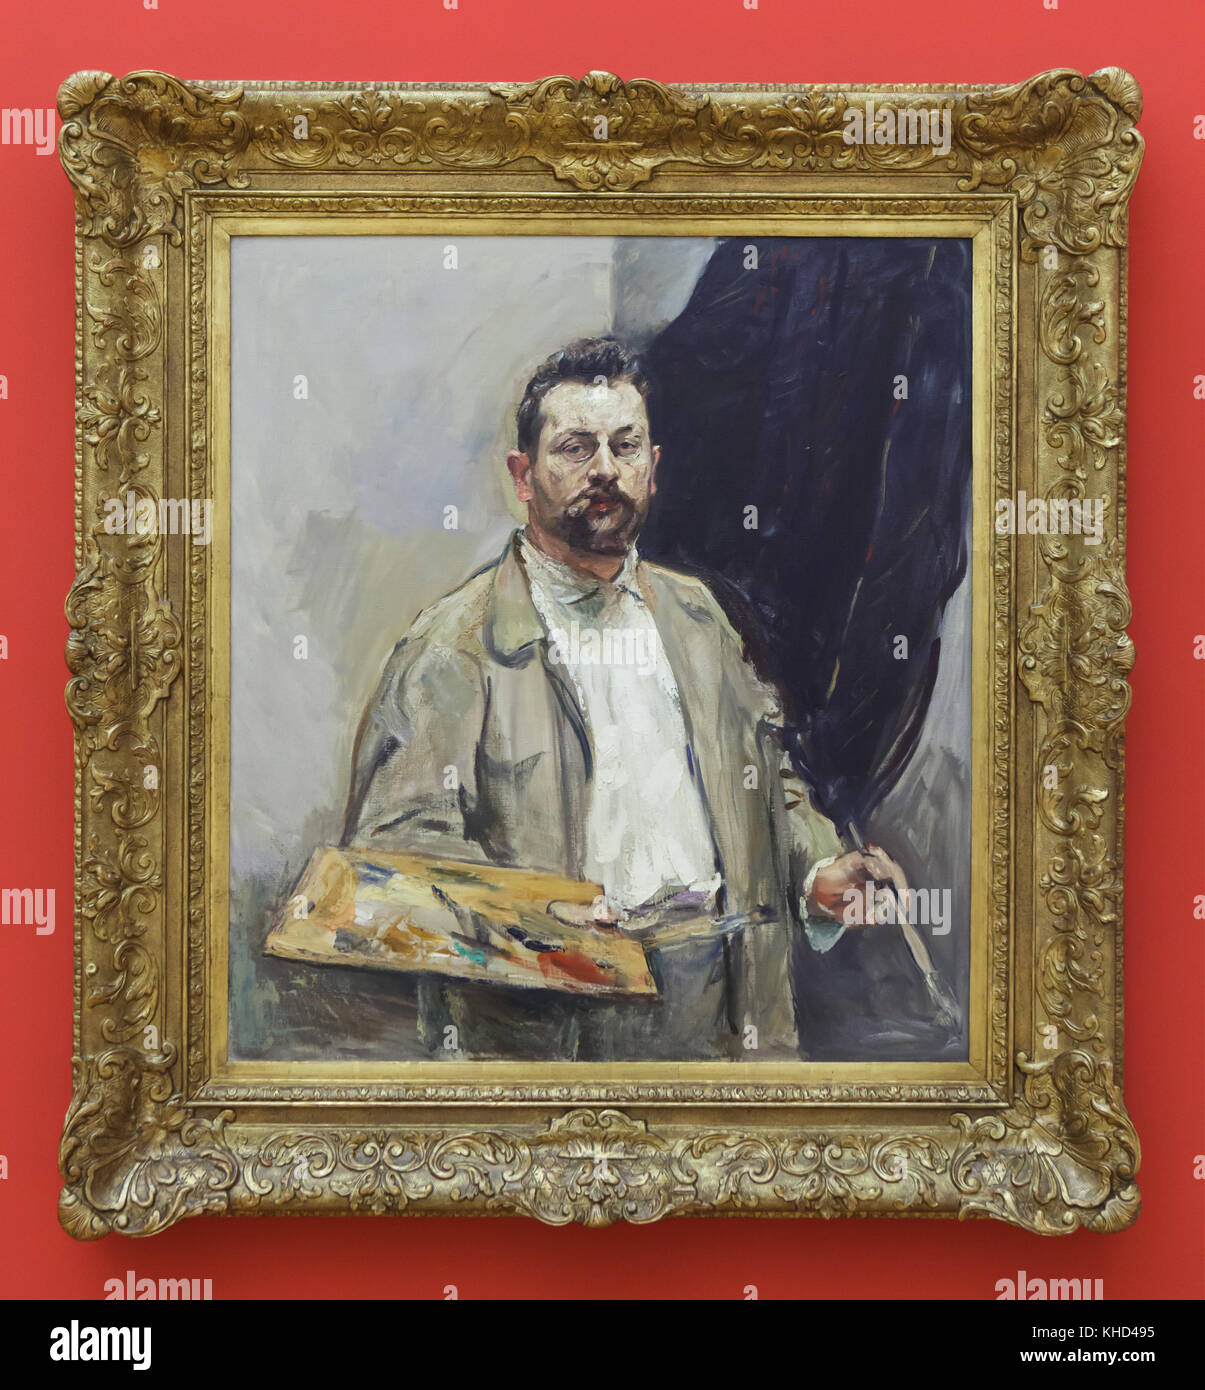 Peinture "portrait avec la Palette' (1906) par peintre allemand Max Slevogt exposées au Musée des beaux-arts (Musée des beaux-arts) à Leipzig, Saxe, Allemagne. Banque D'Images